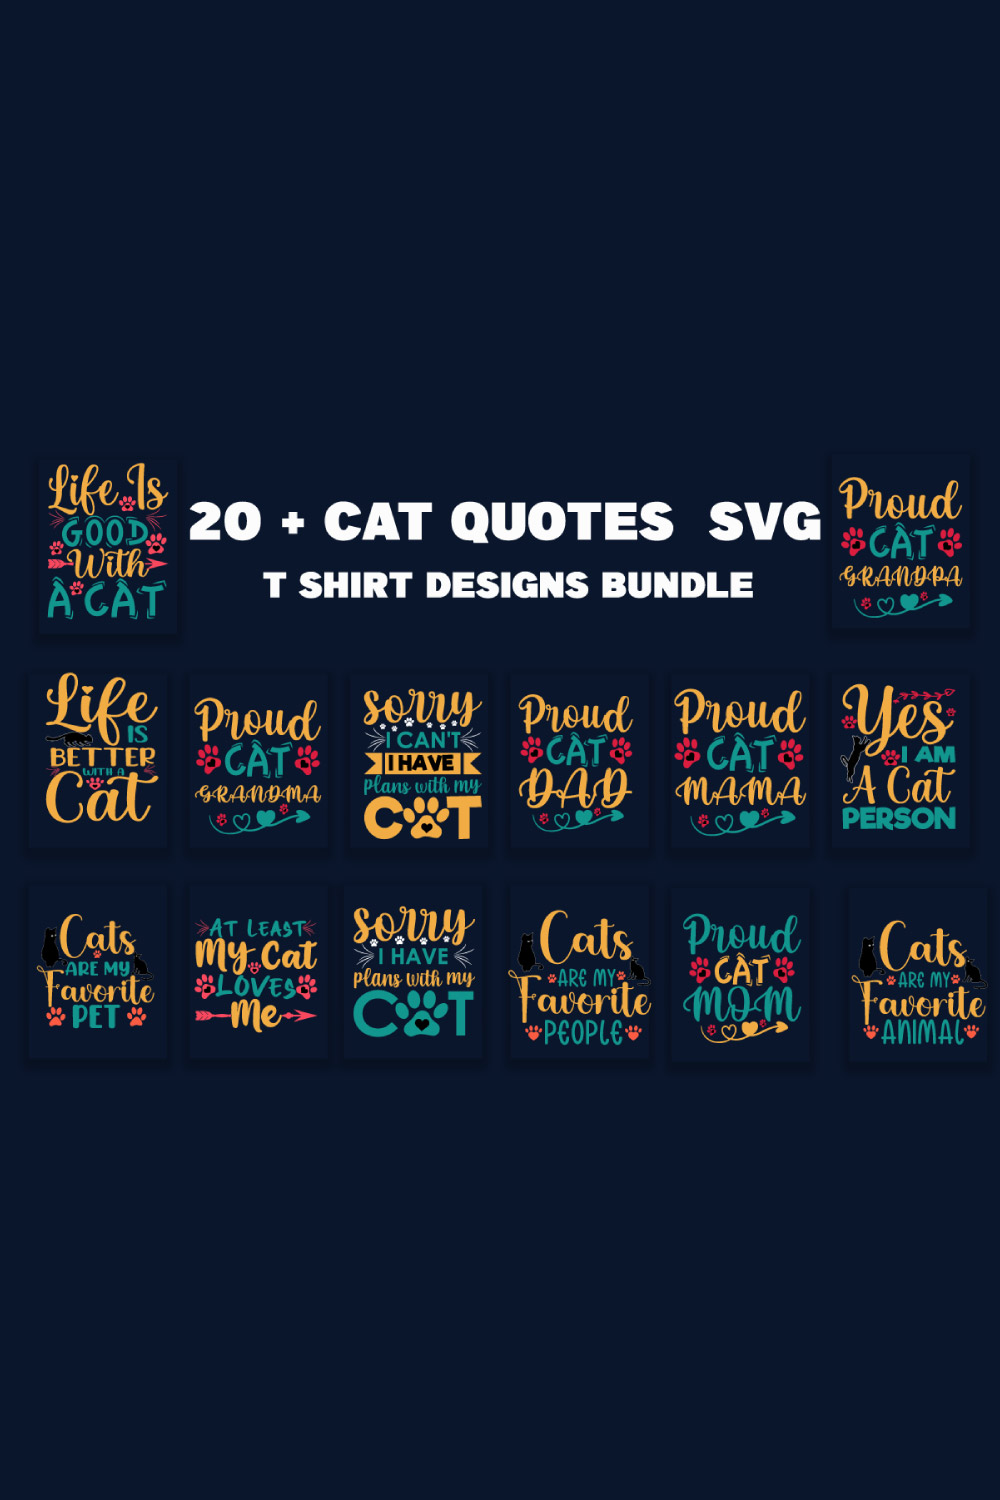 Cat Quotes SVG T-Shirt Designs Bundle pinterest preview image.